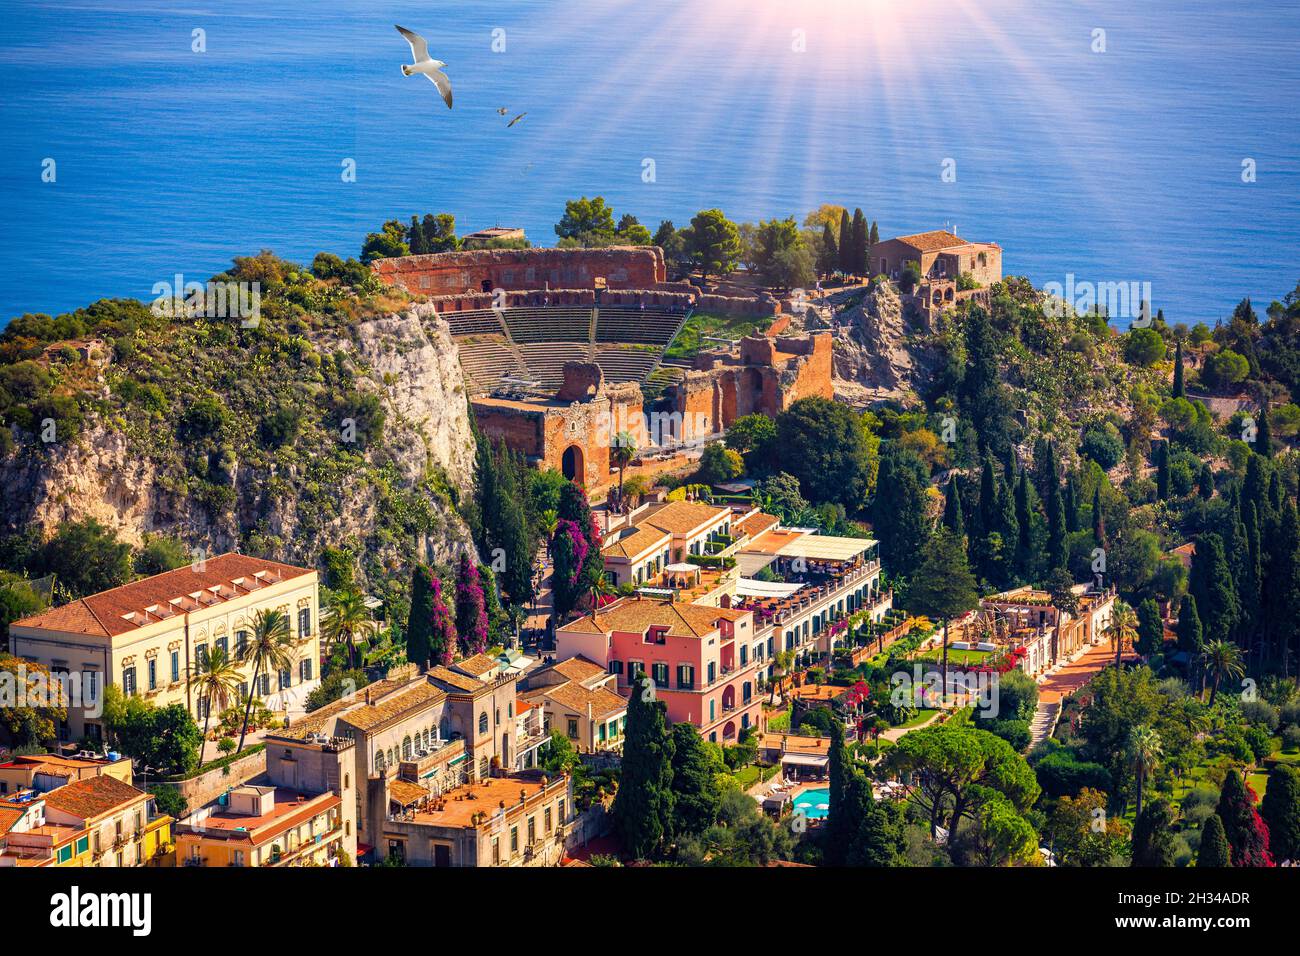 Ruinas del teatro griego antiguo en Taormina, Sicilia, Italia. Taormina situado en la ciudad metropolitana de Messina, en la costa este de la isla de Sicilia. Foto de stock